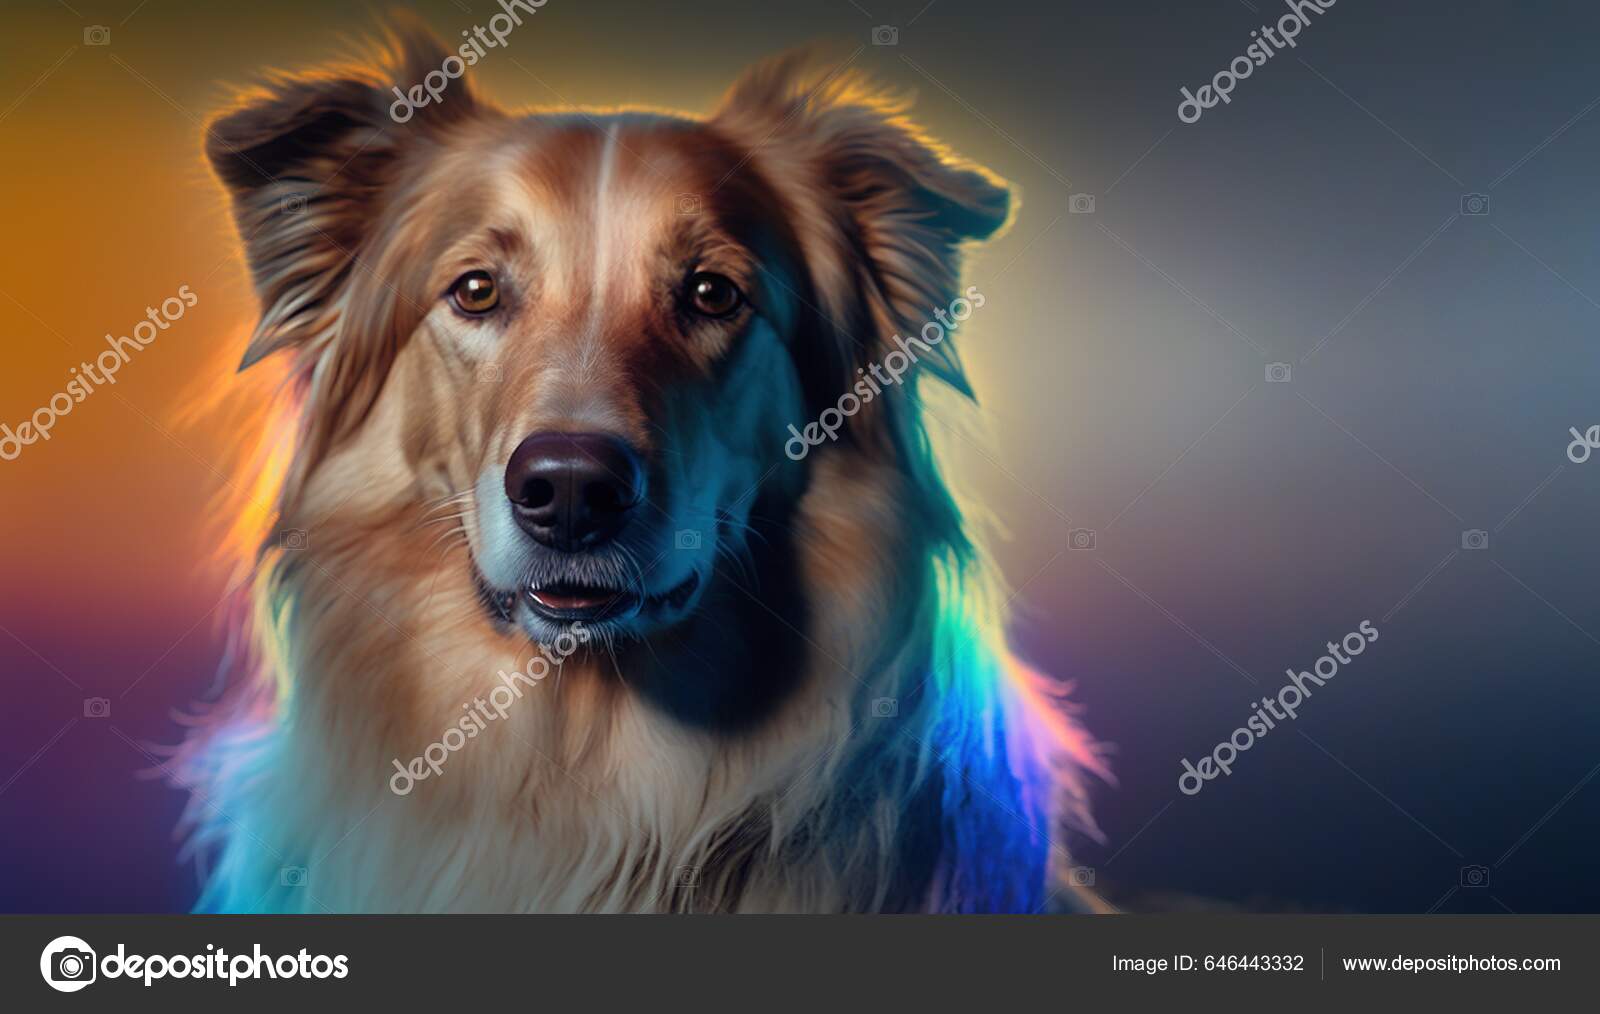 Fonds d'écran chien images libres de droit, photos de Fonds d'écran chien |  Depositphotos